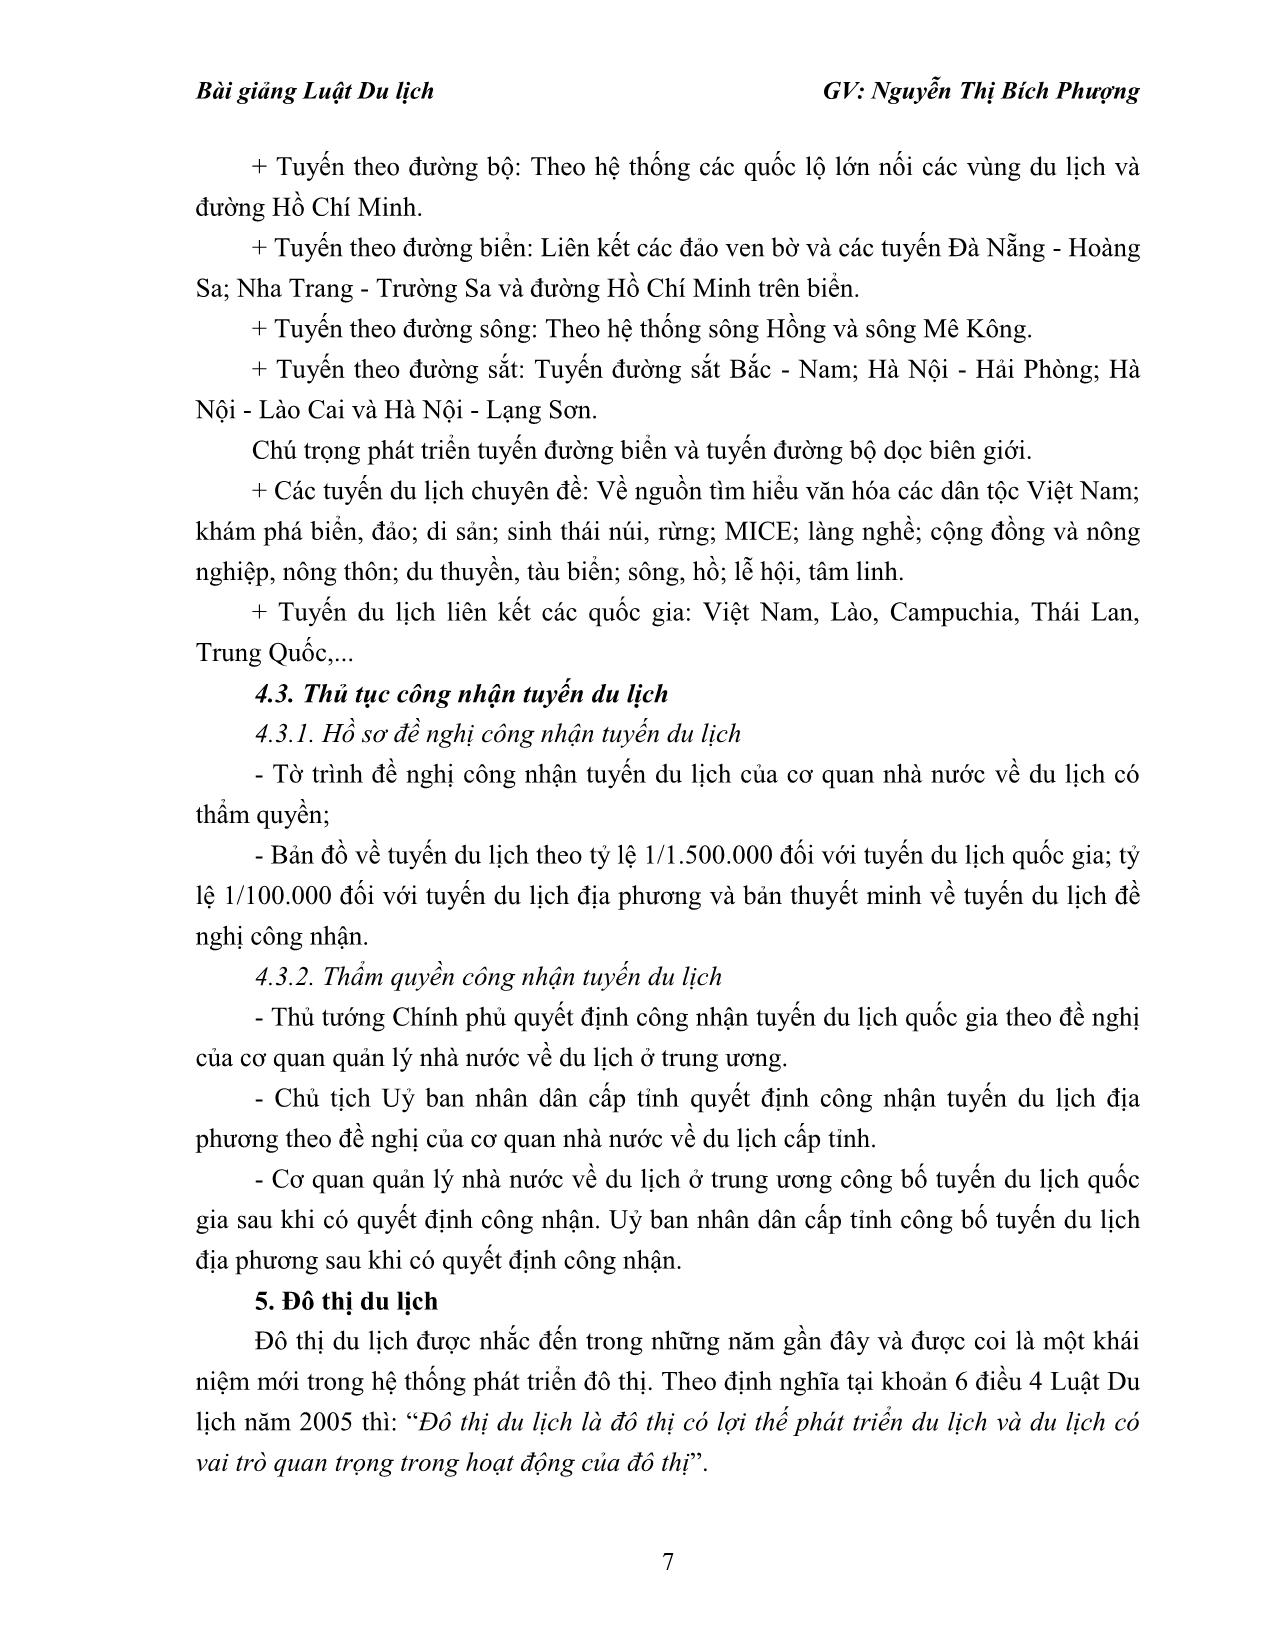 Bài giảng Luật du lịch - Nguyễn Thị Bích Phượng trang 7